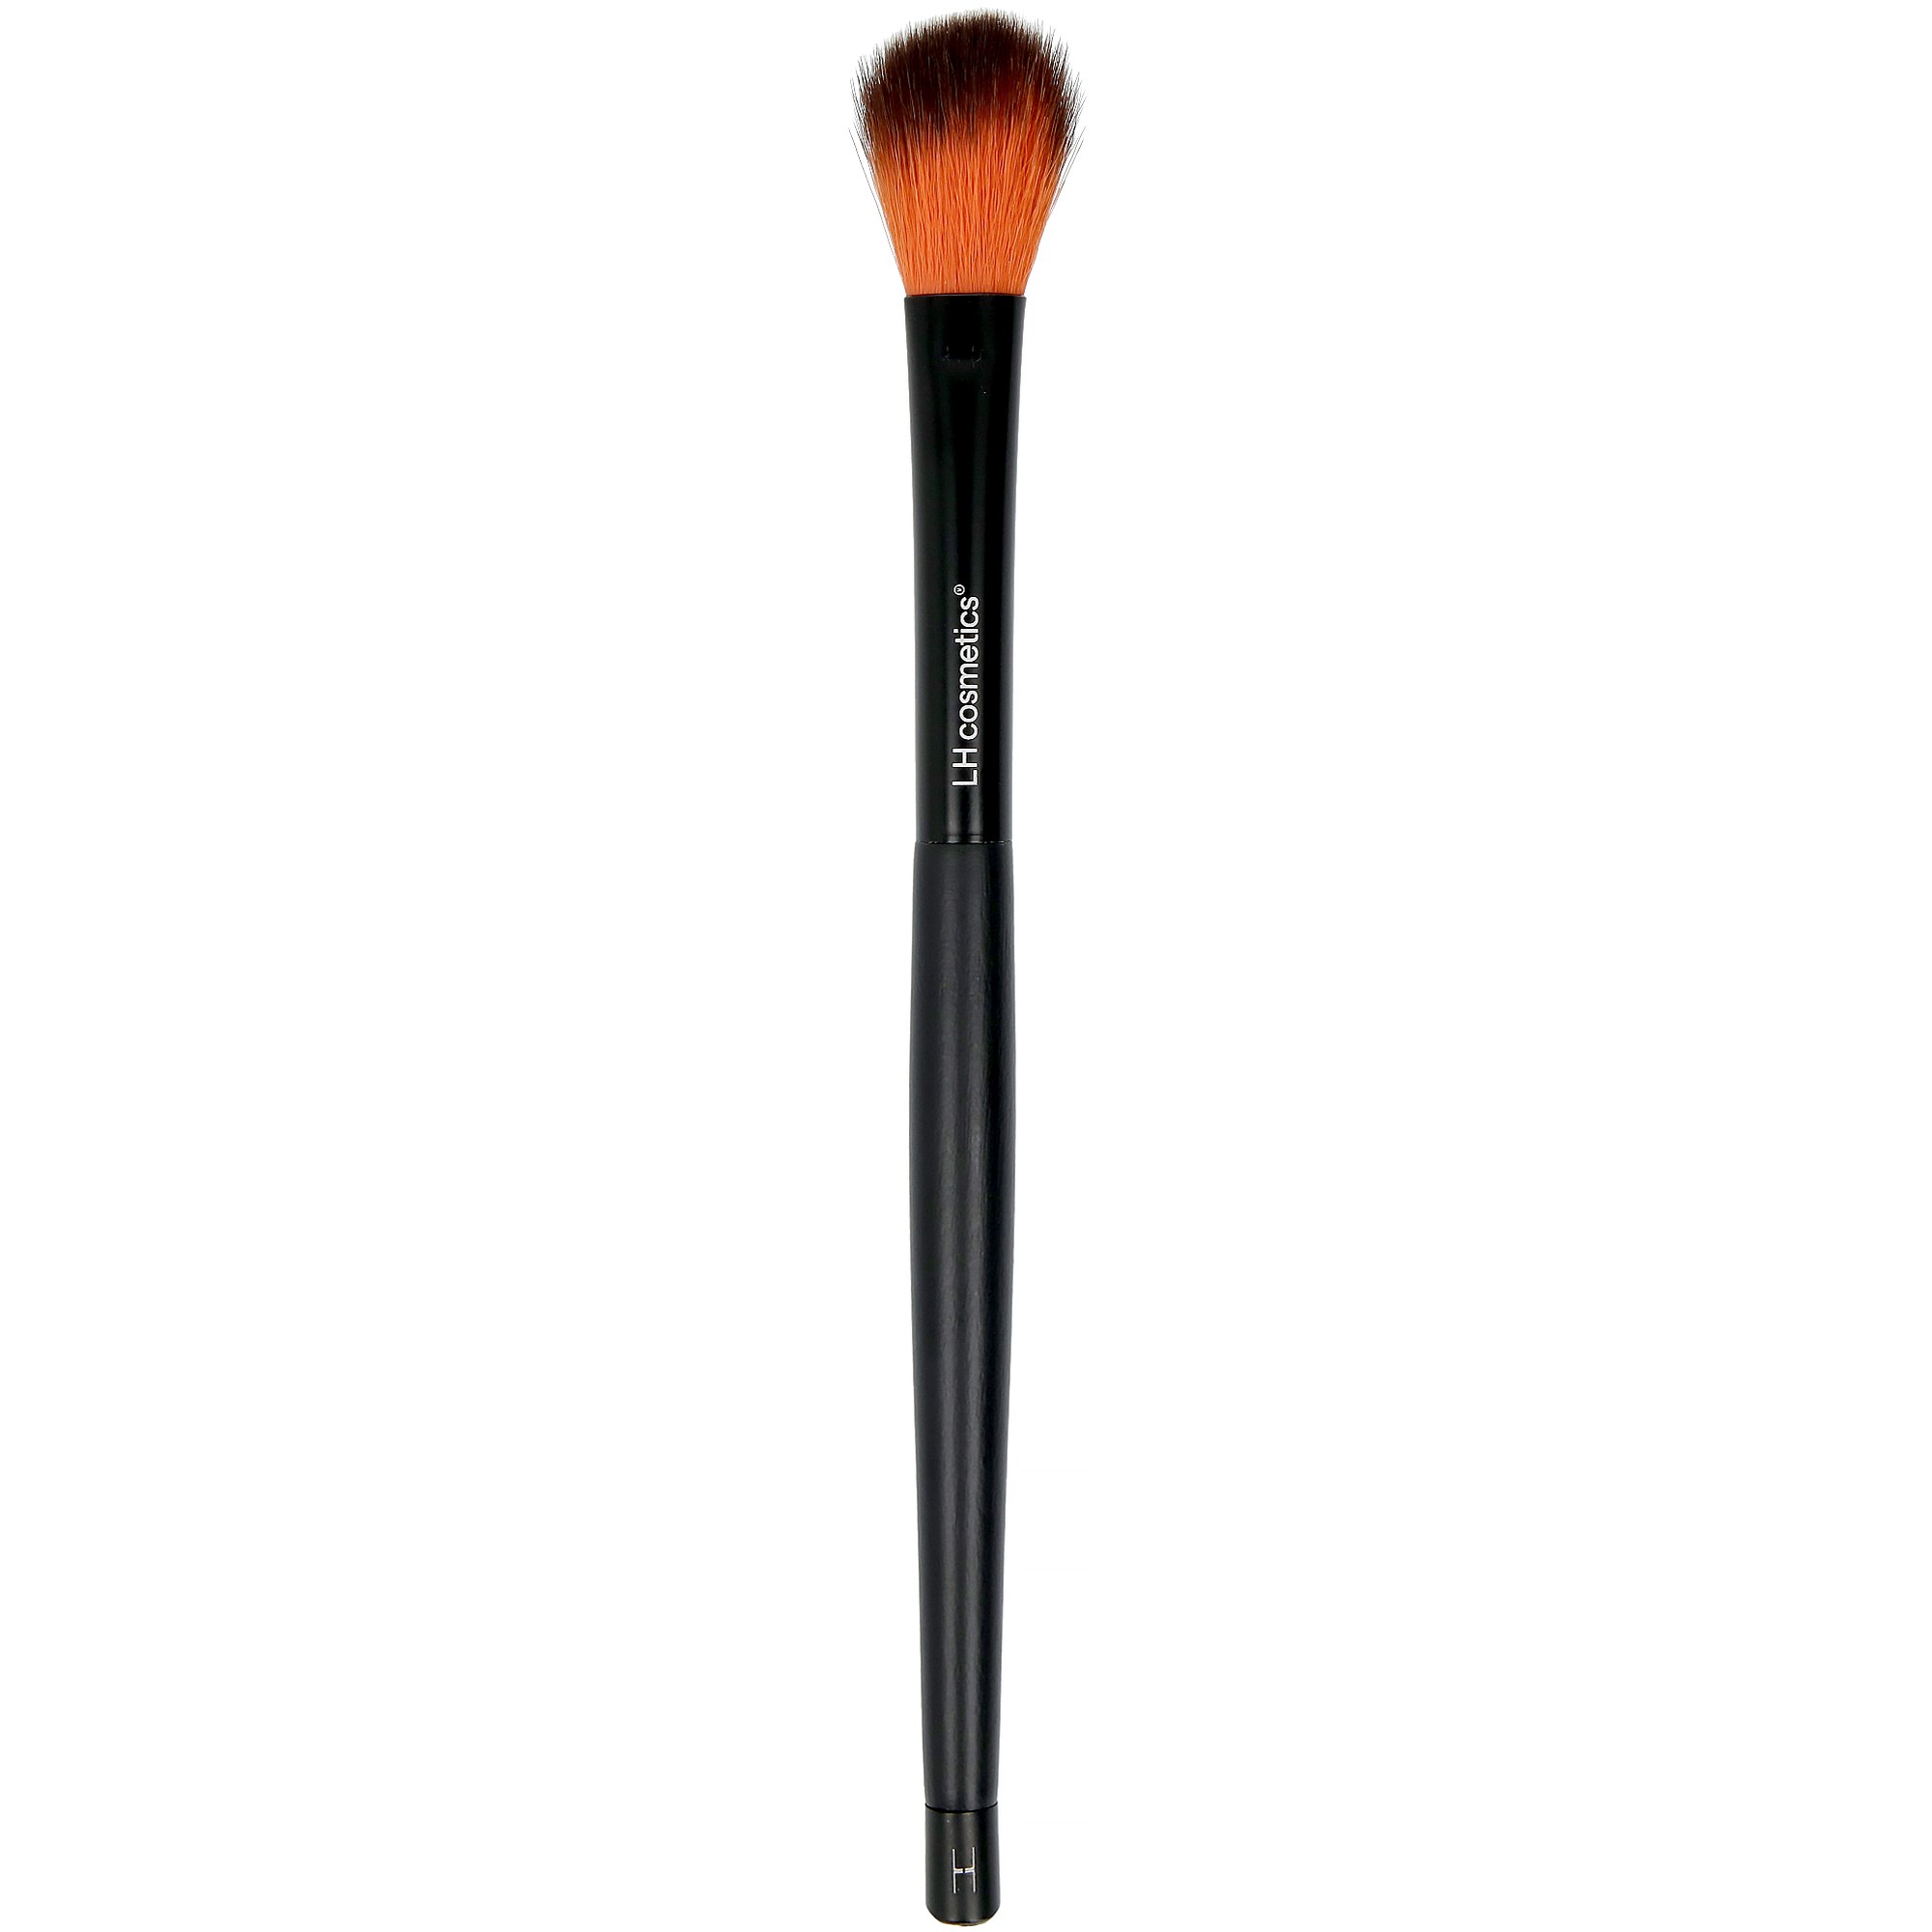 Bilde av Lh Cosmetics Brushes & Tools All Over Brush